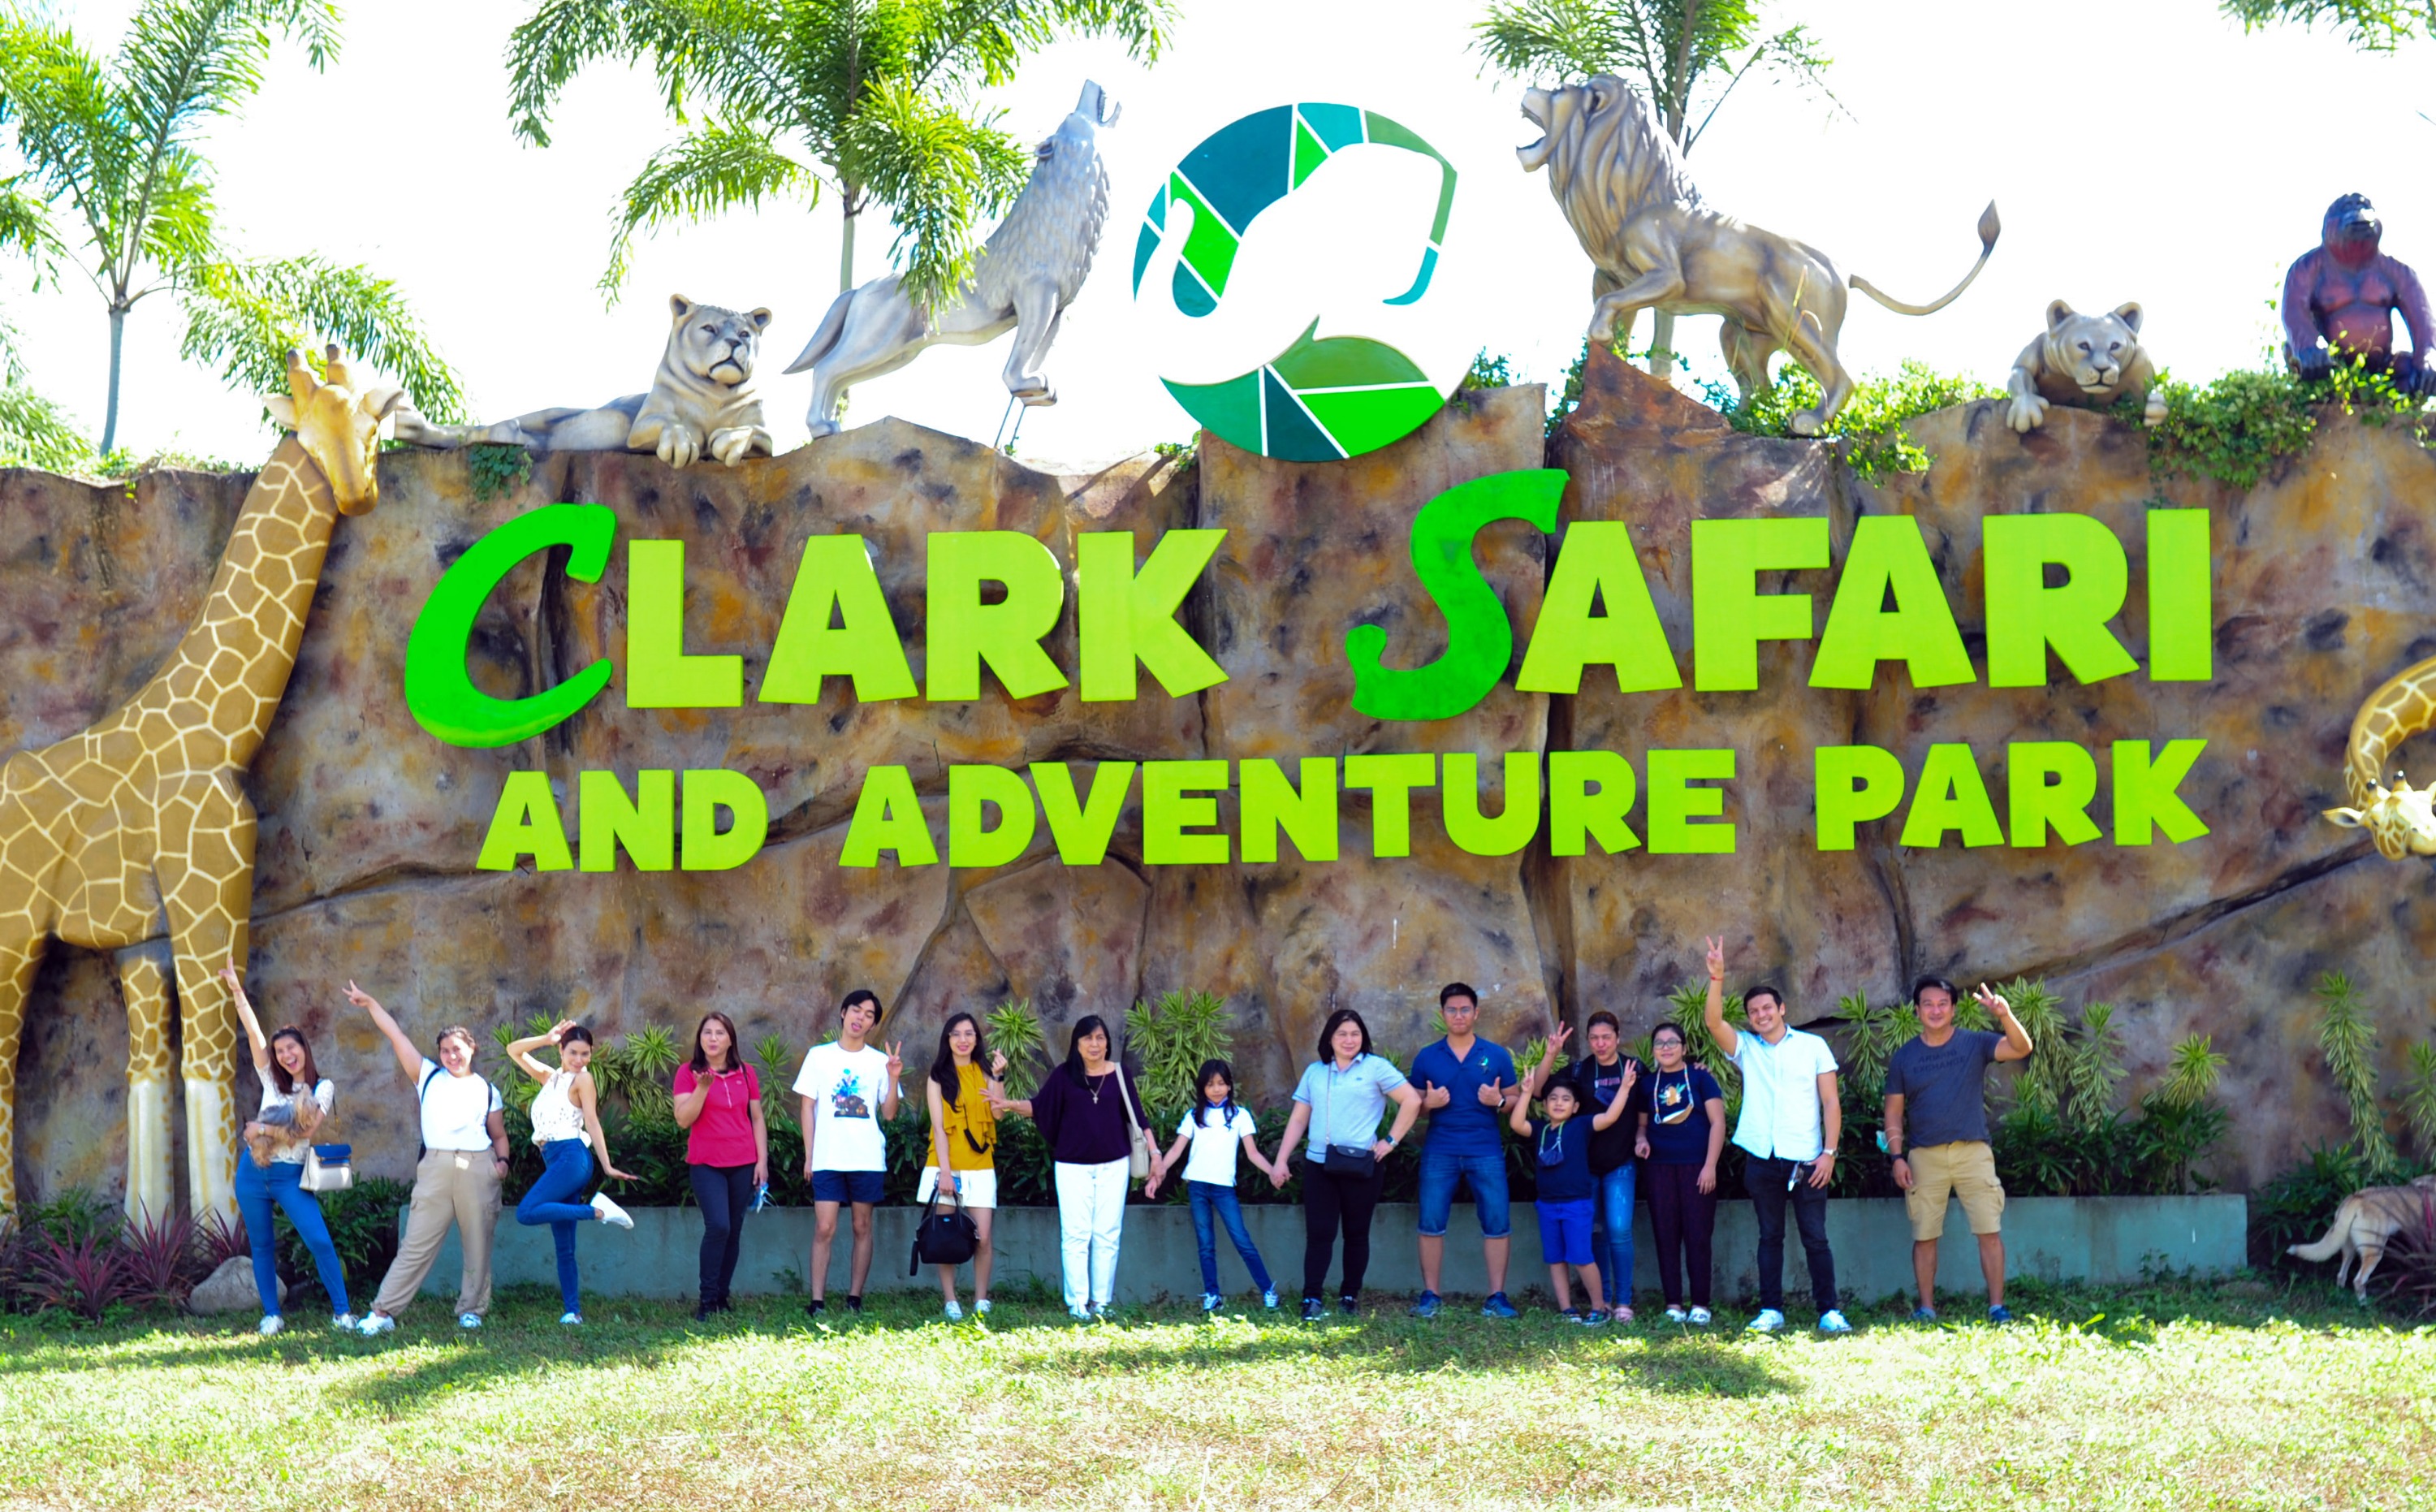 菲律賓-克拉克野生動物園&冒險公園(Clark Safari and Adventure Park)門票